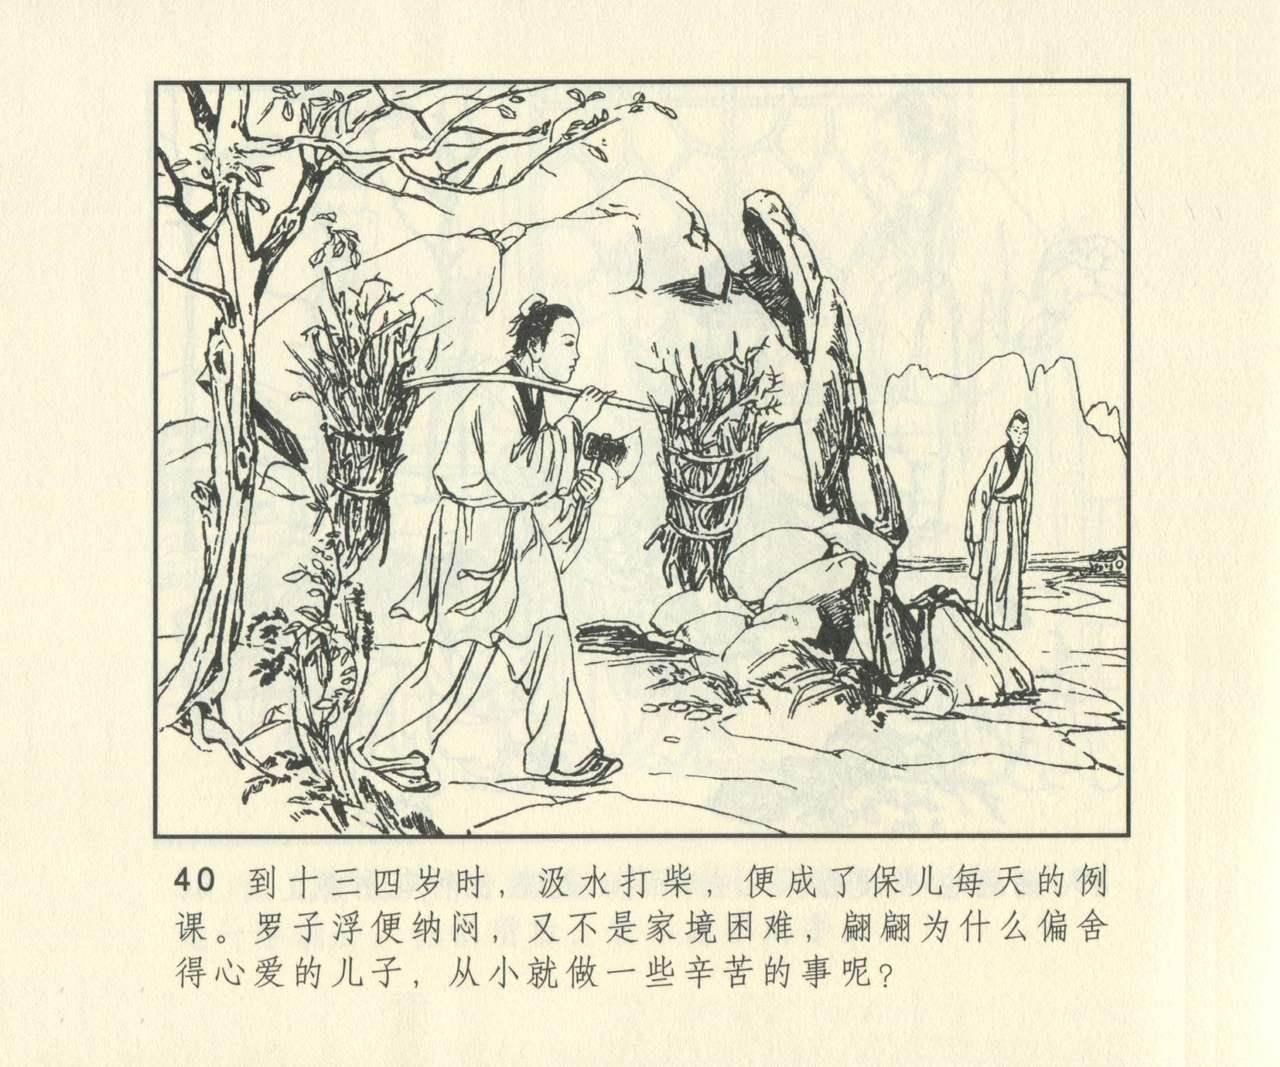 聊斋志异 张玮等绘 天津人民美术出版社 卷二十一 ~ 三十 656